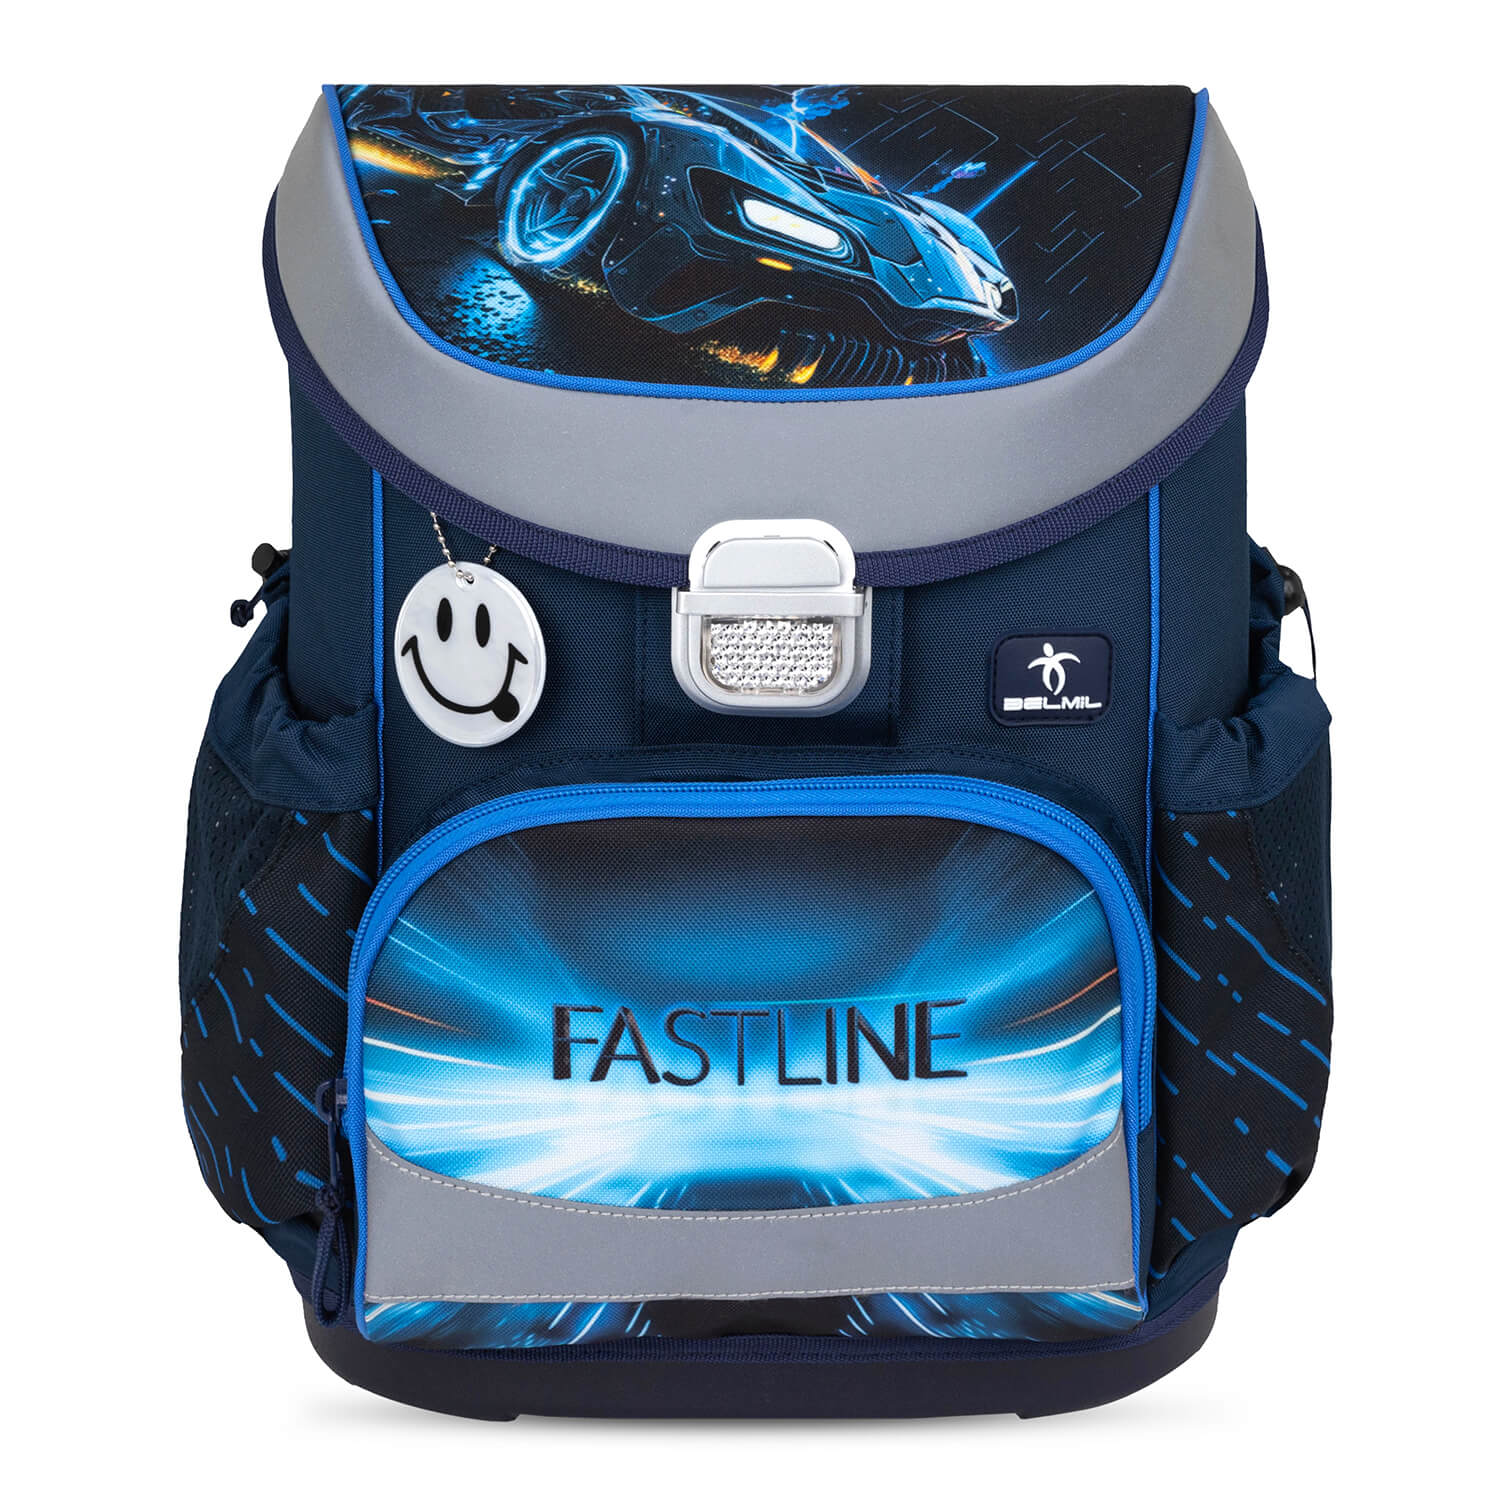 Mini-Fit Fastline schoolbag set 4 pcs